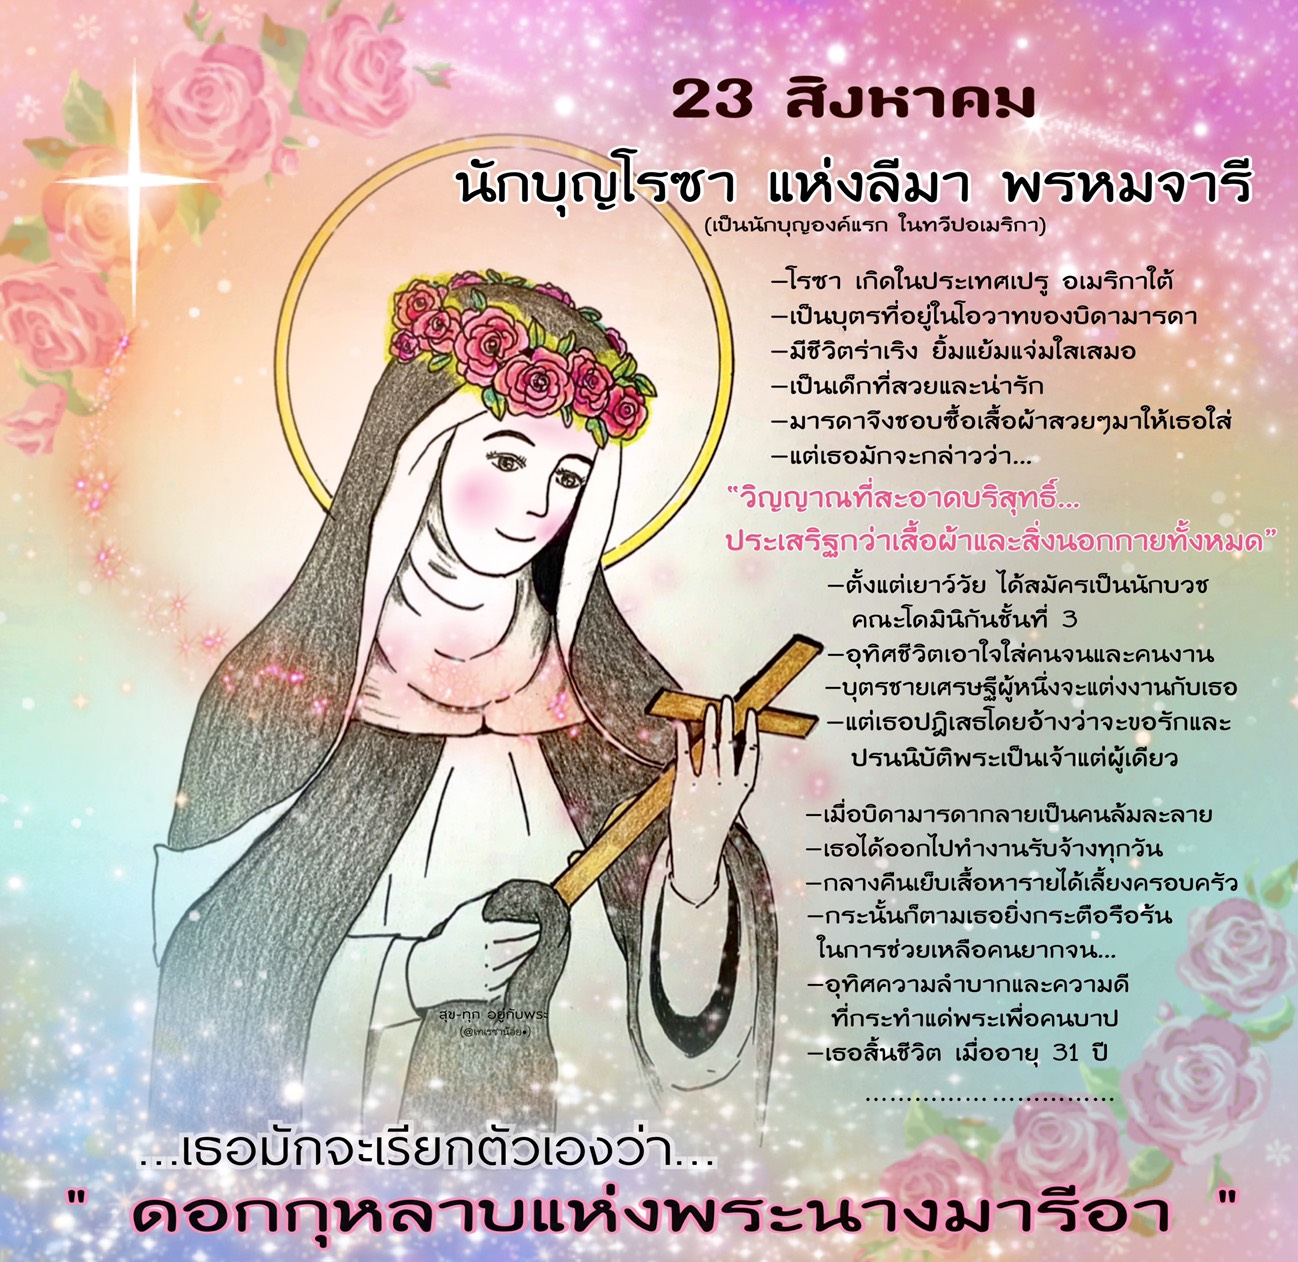 นักบุญโรซา แห่งลีมา พรหมจารี 23 สิงหาคม